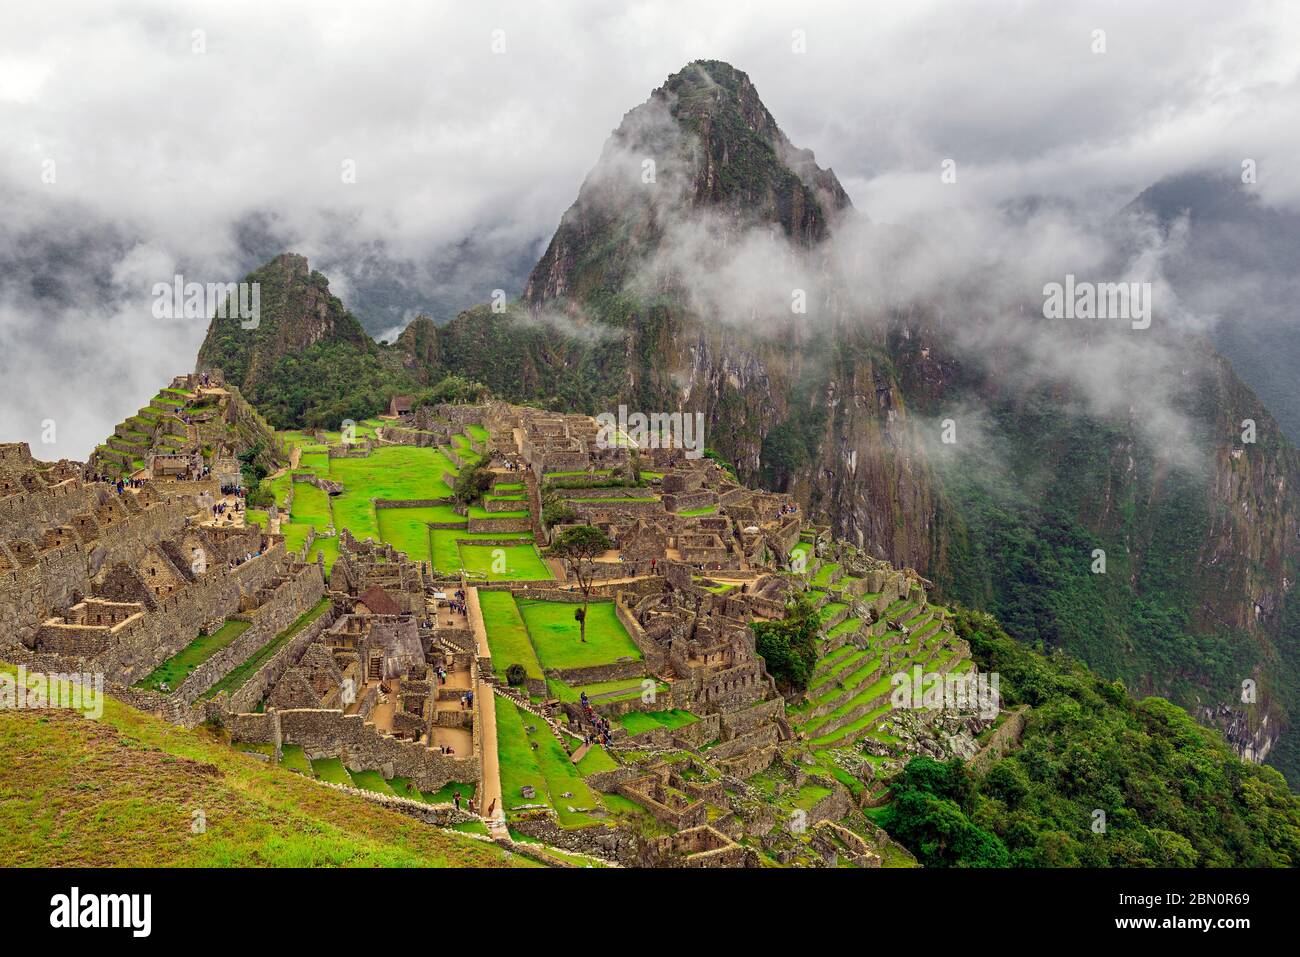 The Machu Picchu Inca ruin in the Mist, Cusco Province, Peru. Stock Photo